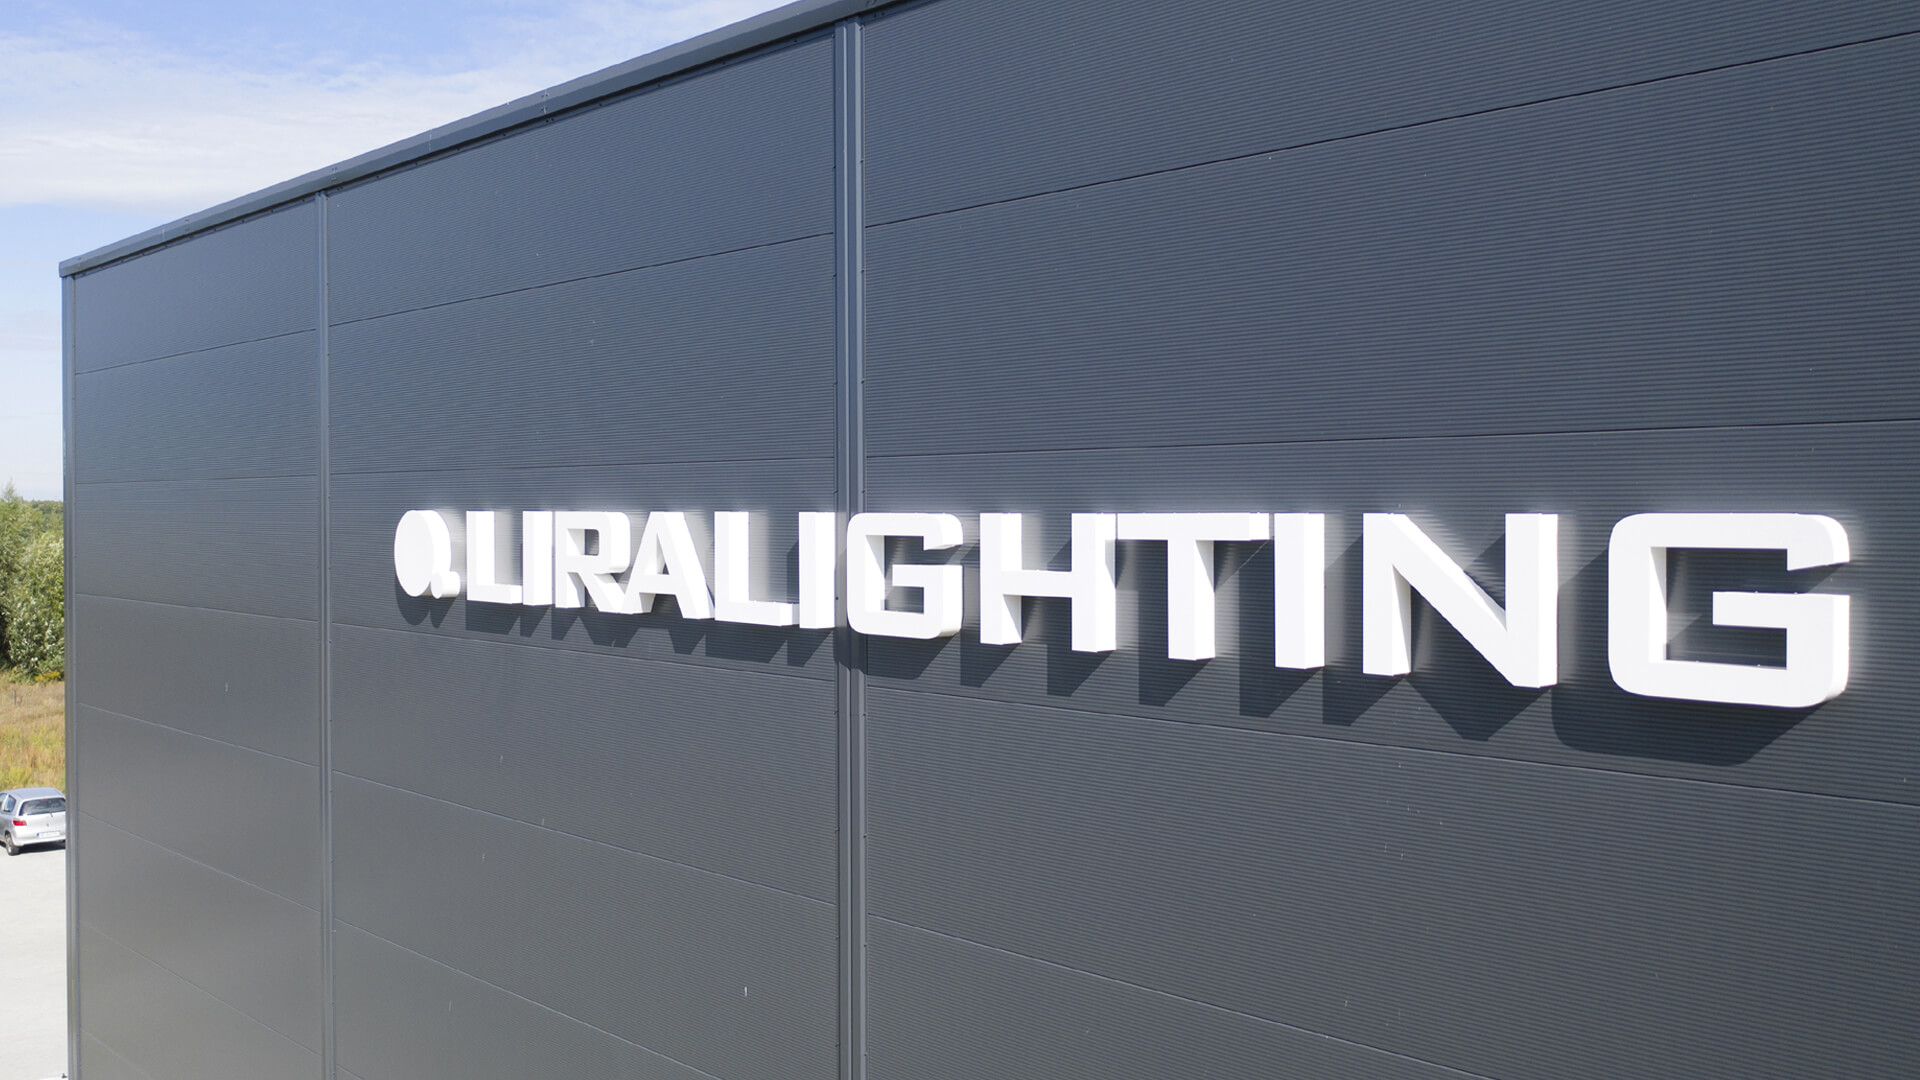 Litery świetlne Liralighting - Litery świetlne LED 3D na hali przemysłowej w kolorze białym.